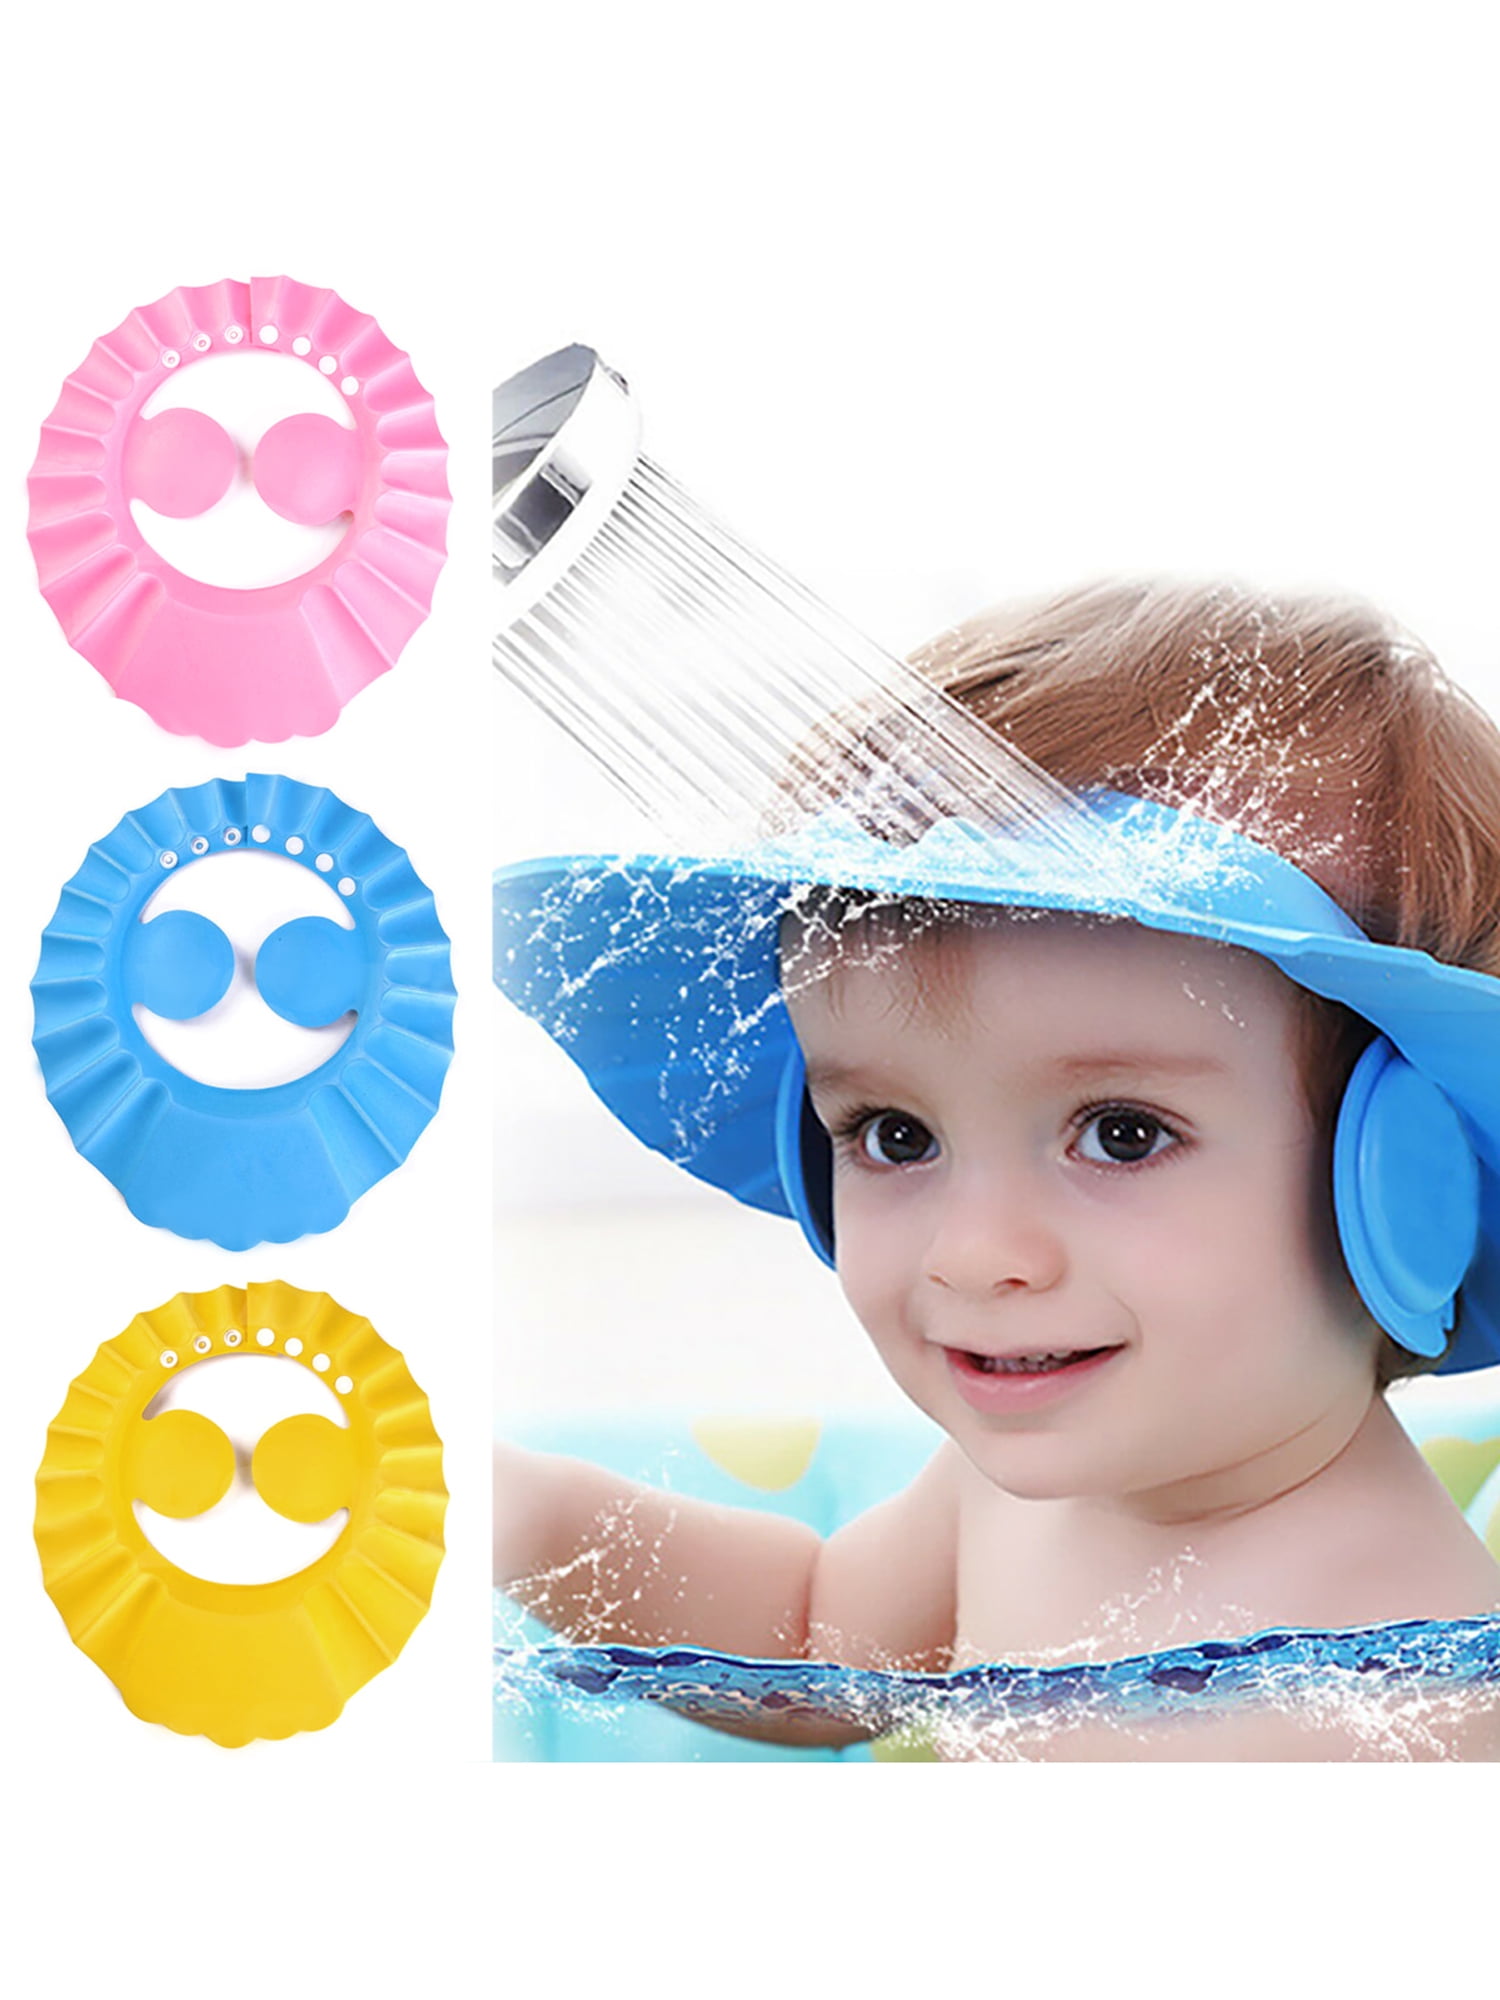 ADJUSTABLE BABY SHOWER CAP BABY KIDS CHILDREN BATH SHAMPOO SHIELD HAT WASH HAIR